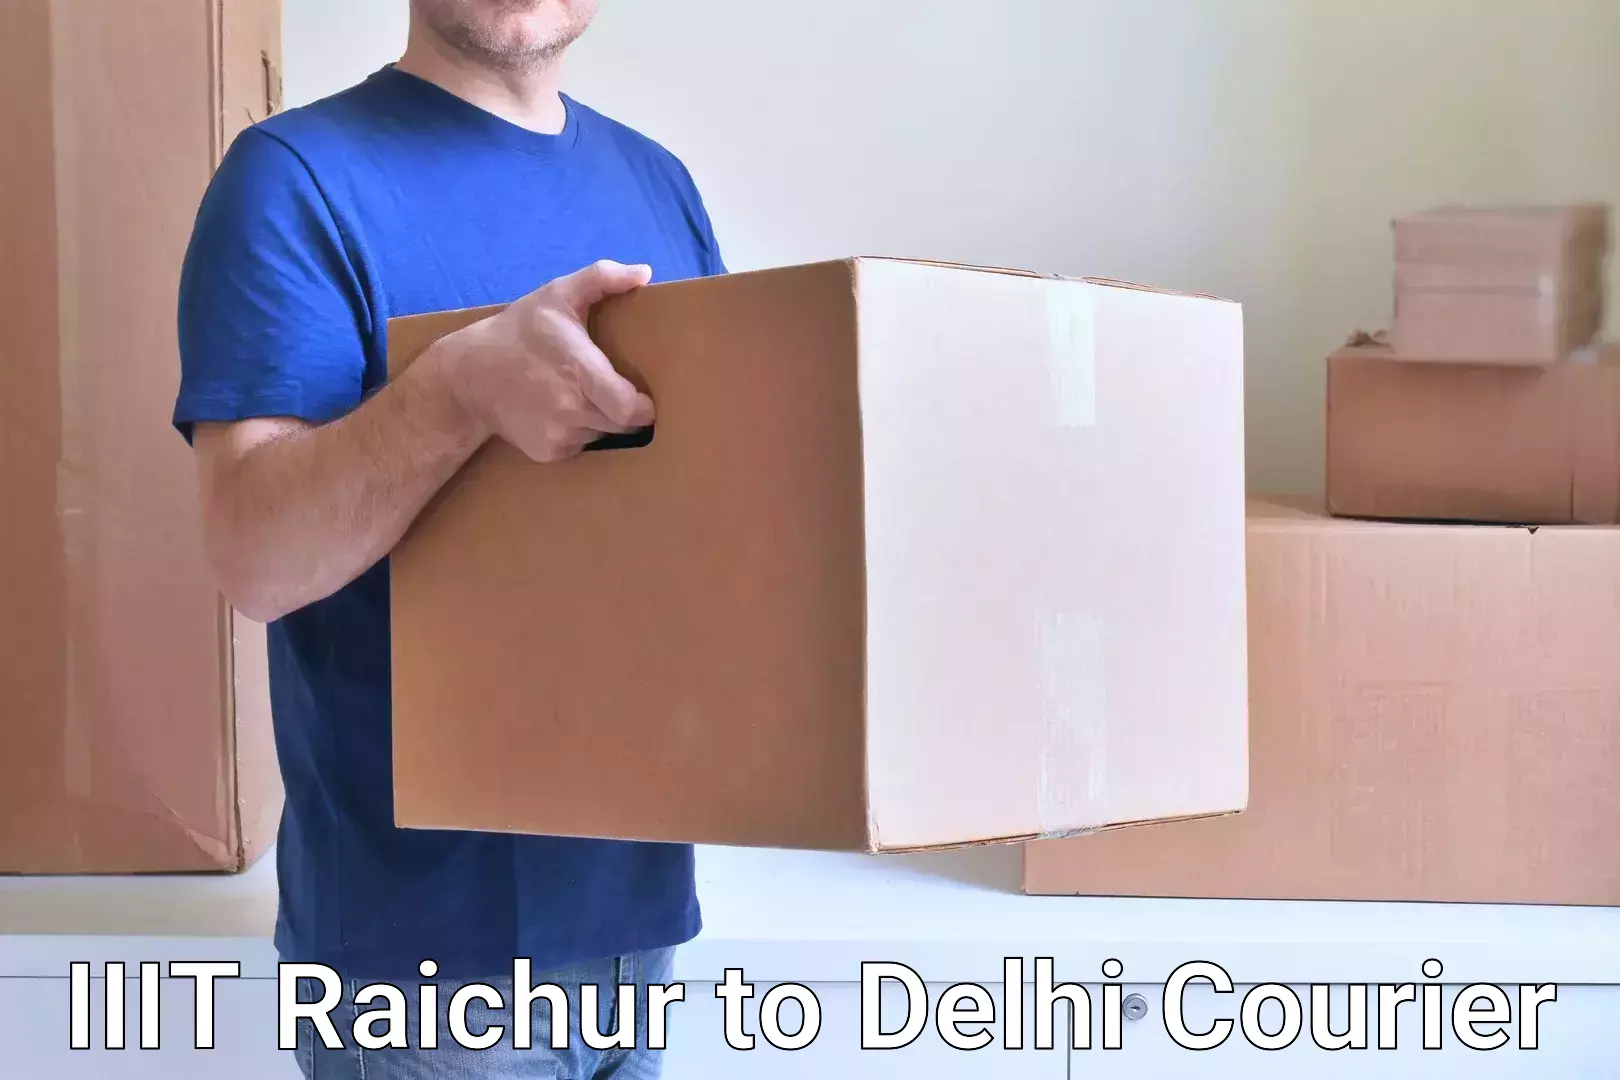 Global shipping solutions in IIIT Raichur to Sarojini Nagar